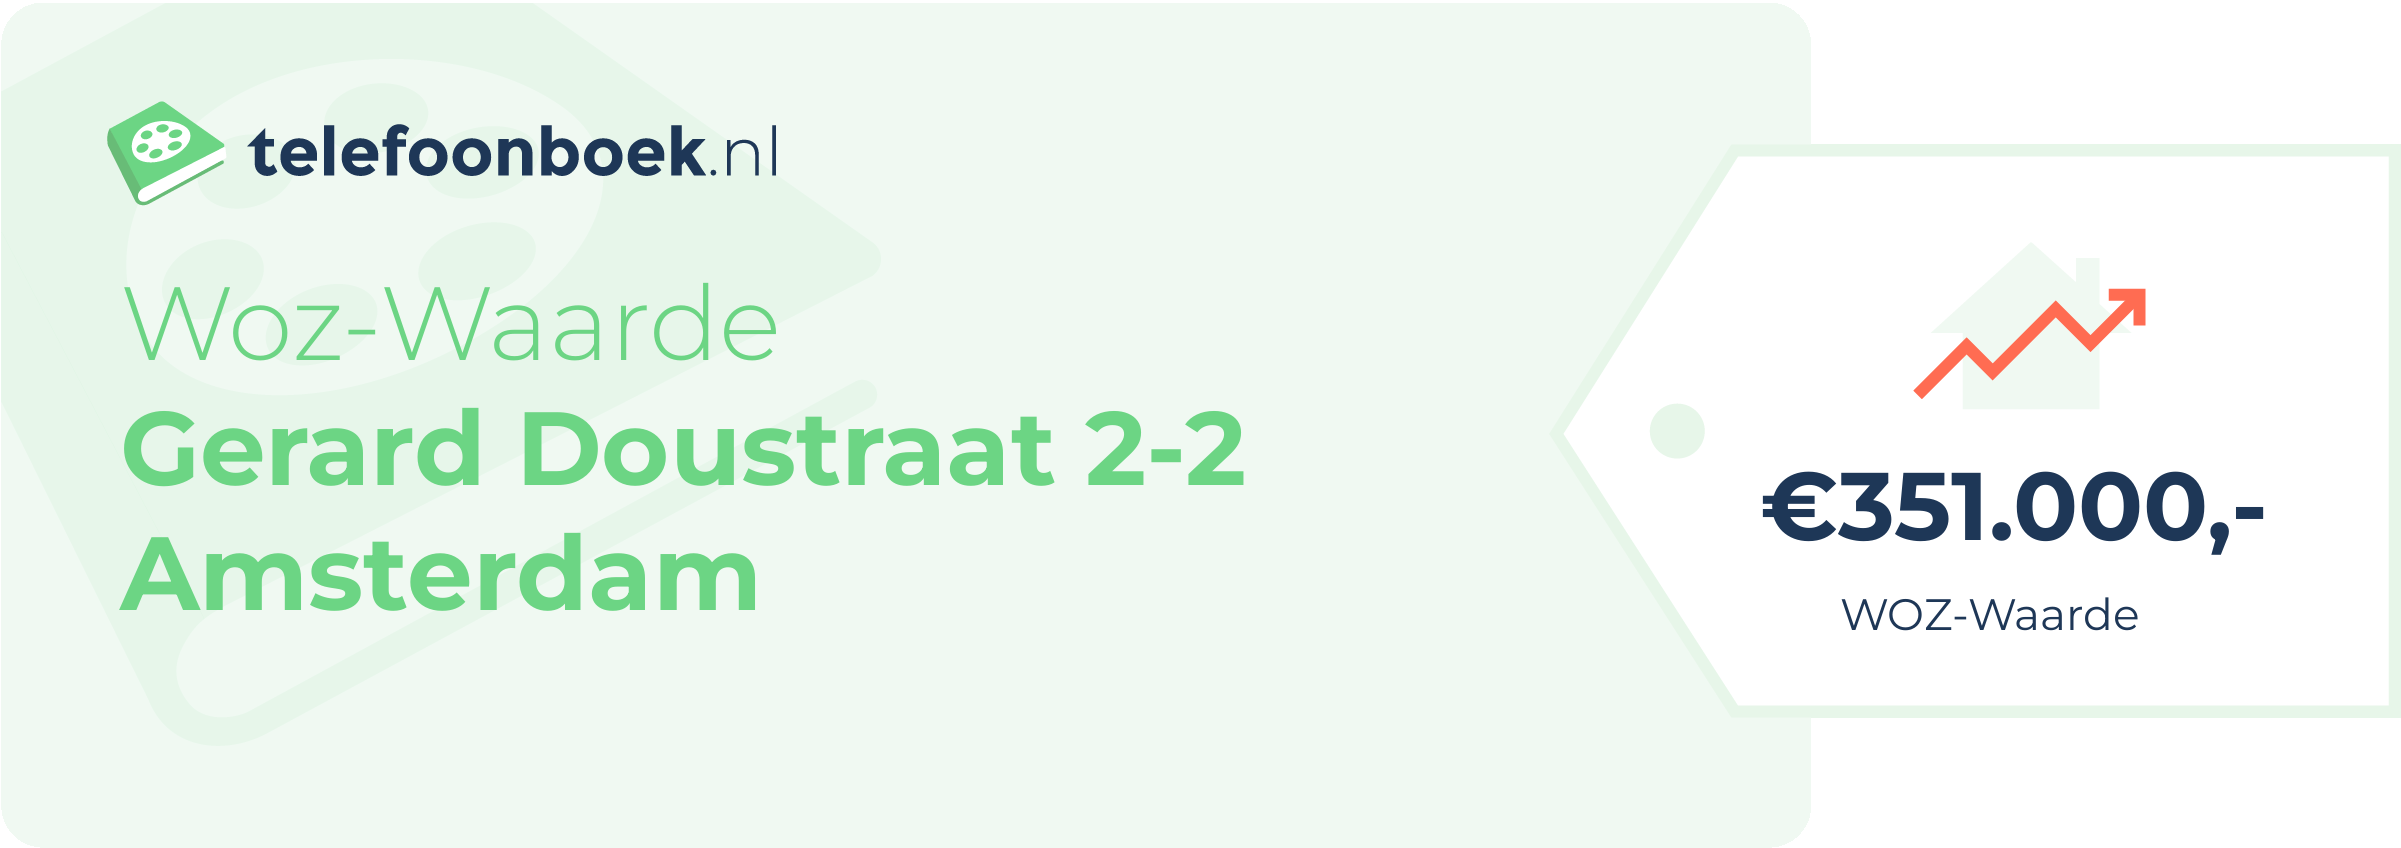 WOZ-waarde Gerard Doustraat 2-2 Amsterdam